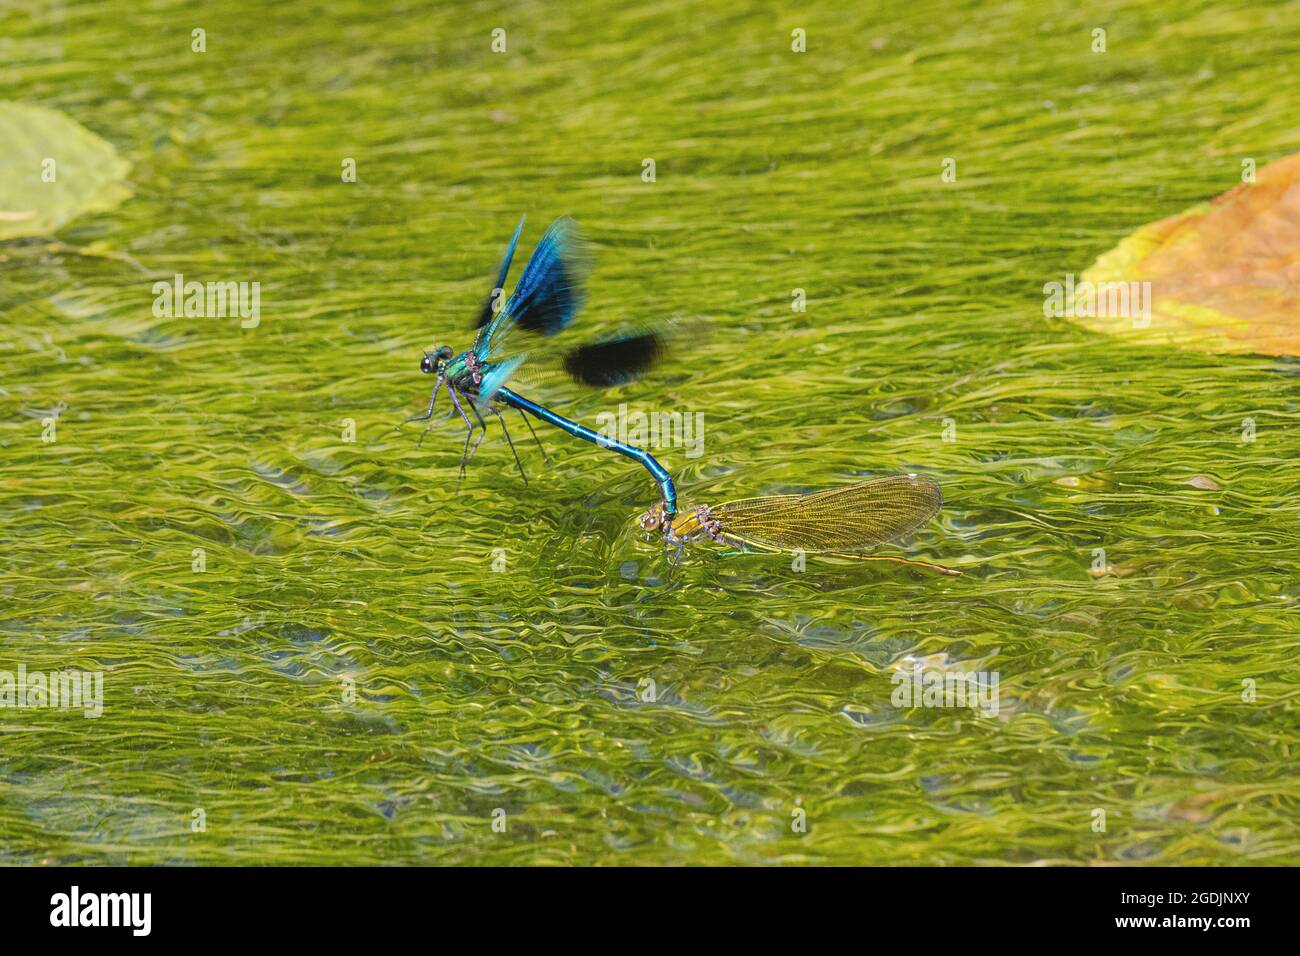 Gebänderte schwarzflügel, gebänderter agrion, gebänderte demoiselle (Calopteryx splendens, Agrion splendens), Männchen zieht das untergetauchte Weibchen nach dem Ei aus dem Wasser Stockfoto